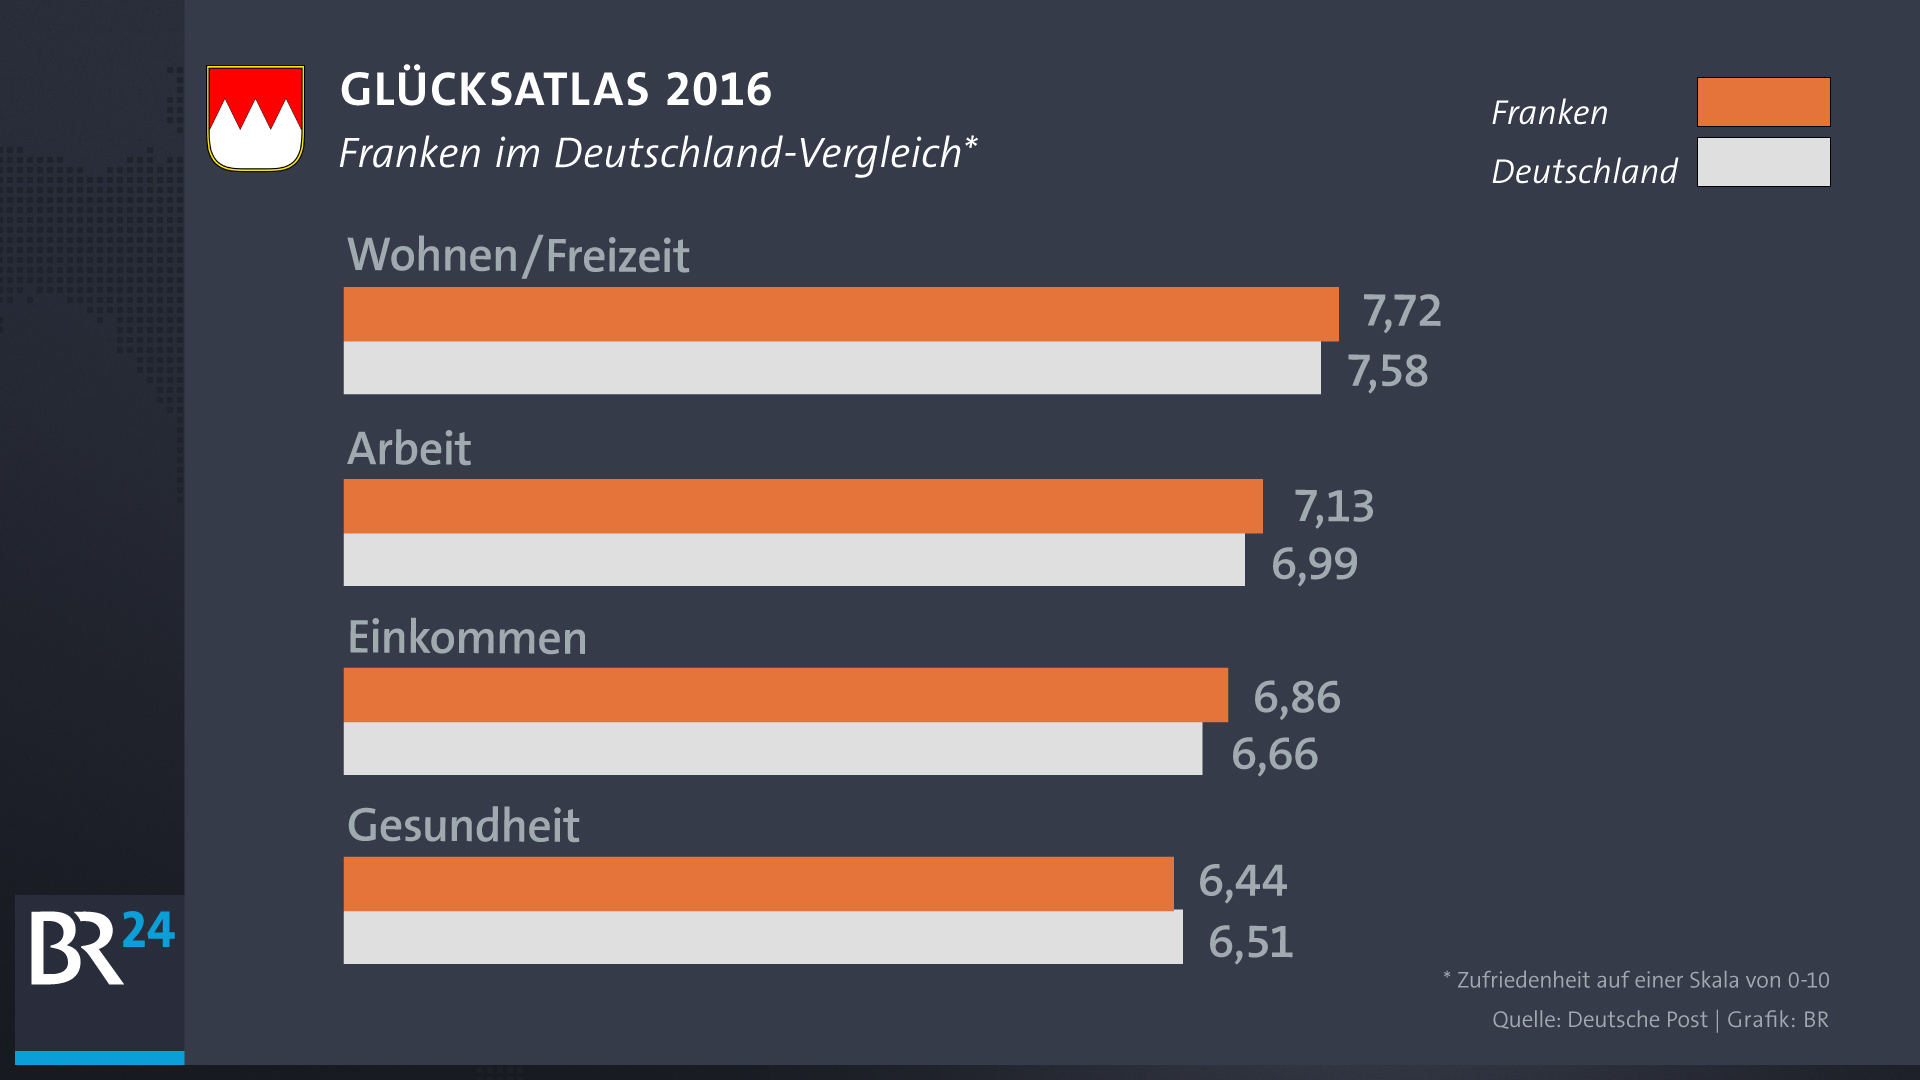 Glücksatlas 2016 - Statistik über die Zufriedenheit der Franken im Deutschland-Vergleich | Bild: Deutsche Post/Grafik: BR